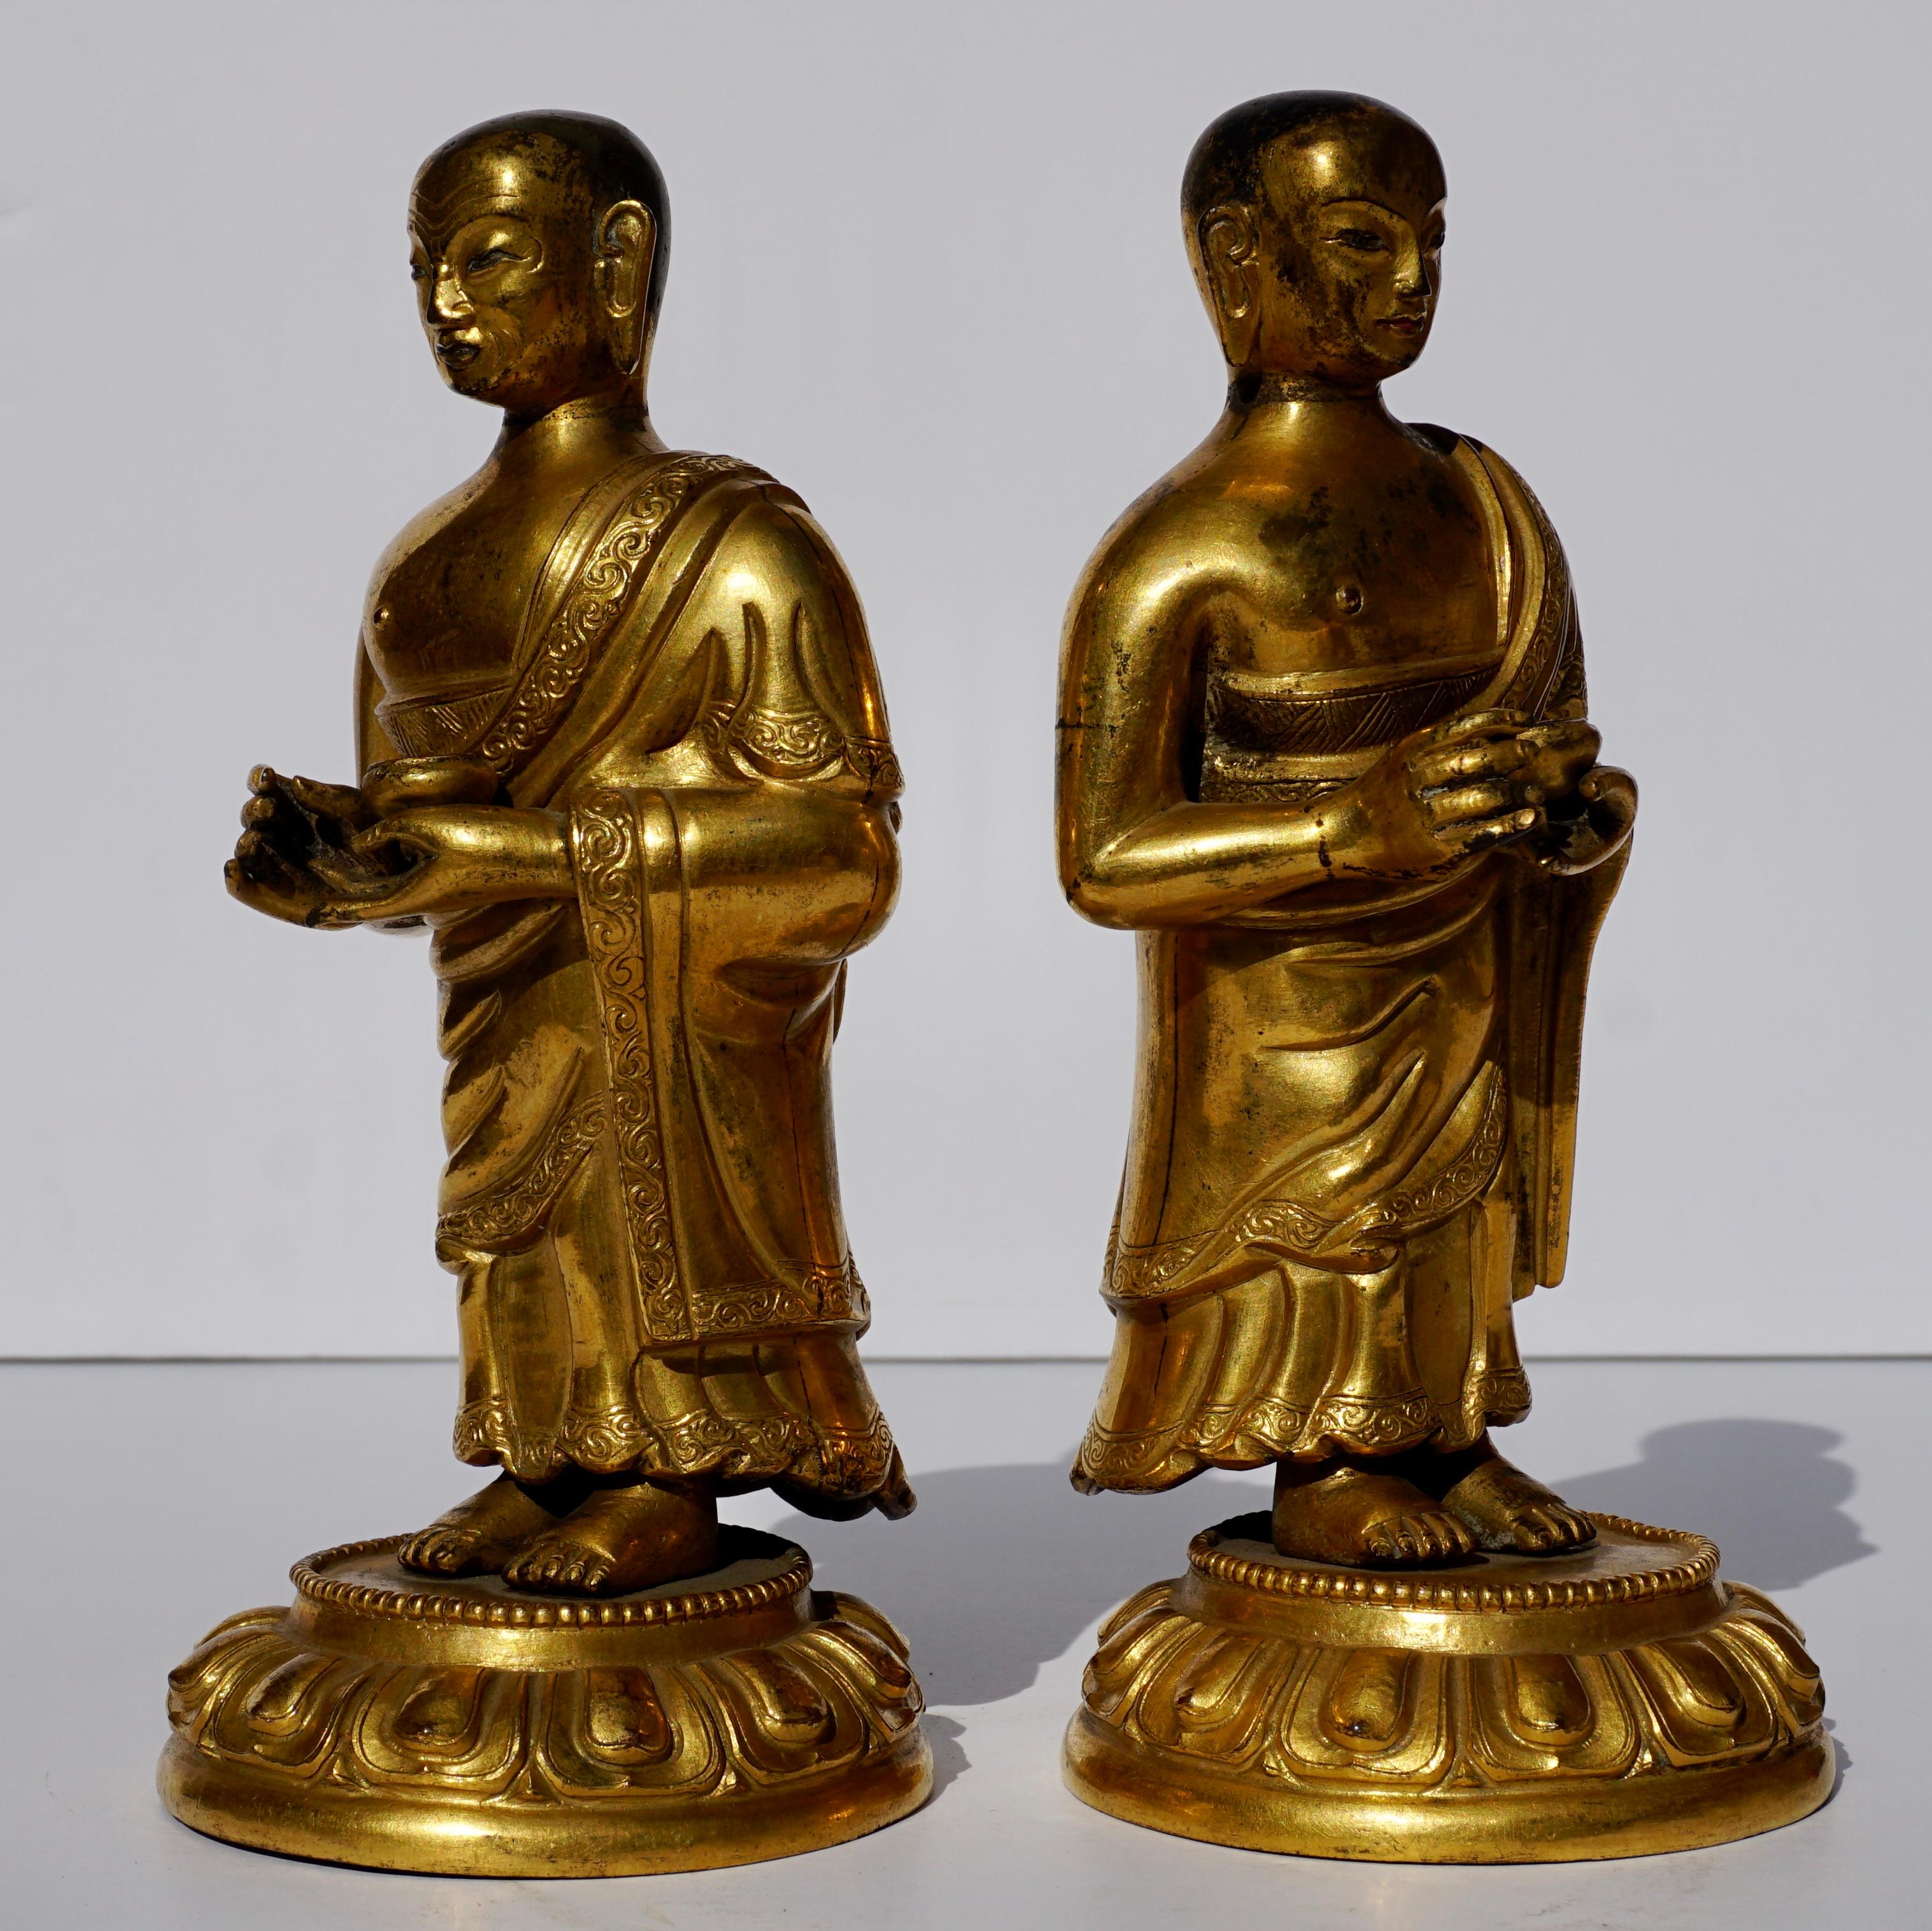 Repoussé 18th Century Tibetan Gilt Repousse Copper and Bronze Lama Buddha Figures